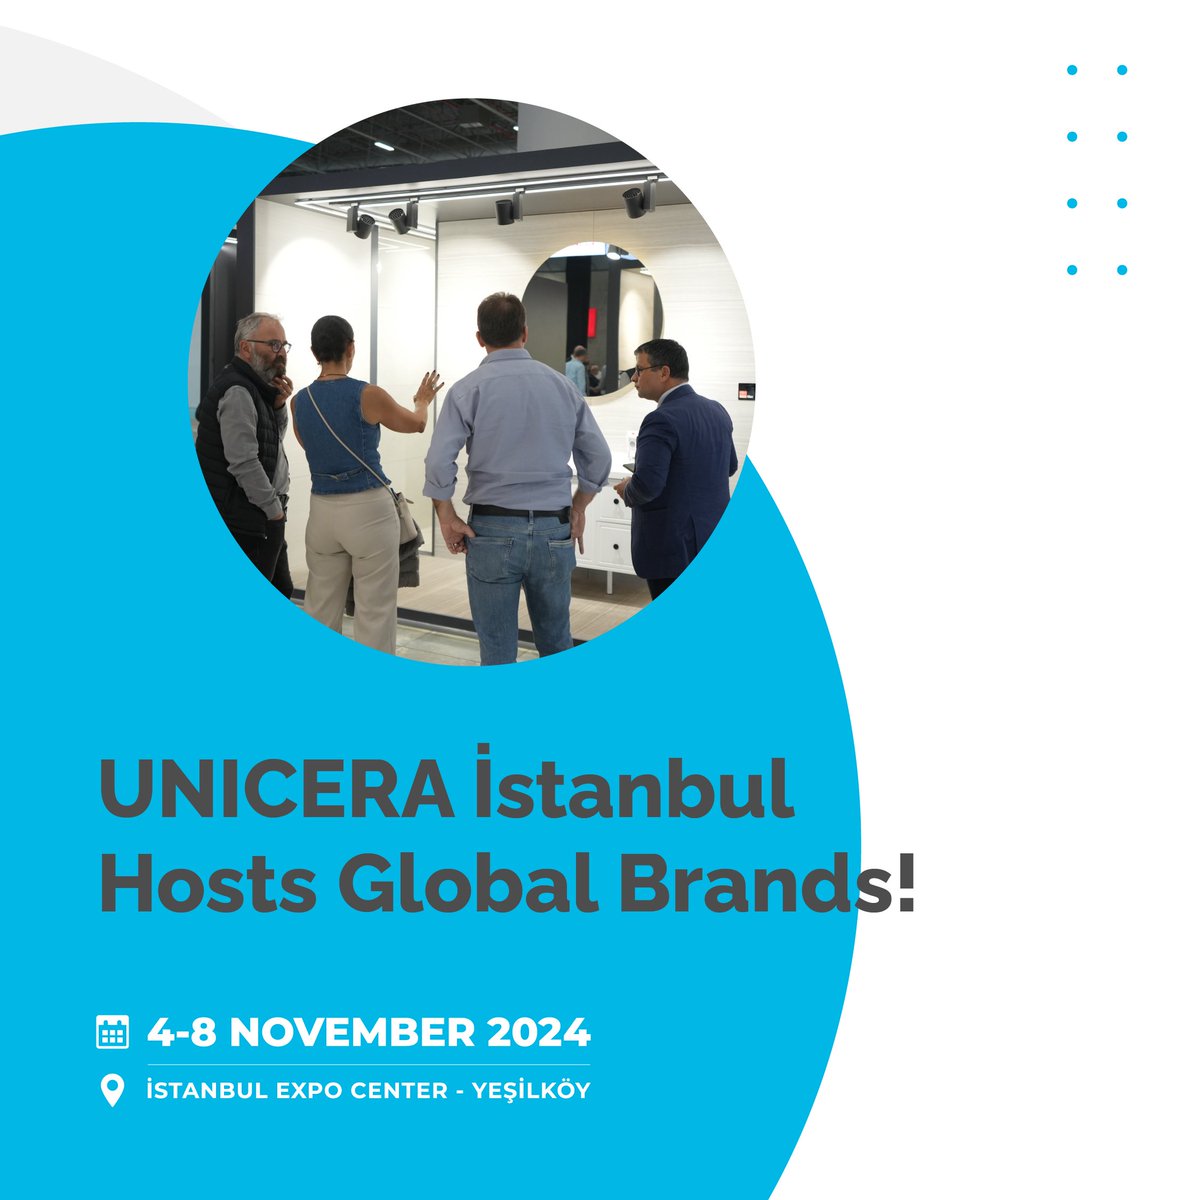 Dünya Markaları UNICERA İstanbul’da!

📌Katılımcı Olun: unicera.com.tr/katilimci-tale…

UNICERA Istanbul Hosts Global Brands!

📌Be an Exhibitor: en.unicera.com.tr/exhibitor-requ…

#UNICERAİstanbul #seramik #mutfak #banyo #ceramic #kitchen #bathroom #dünyamarkaları #globalbrands